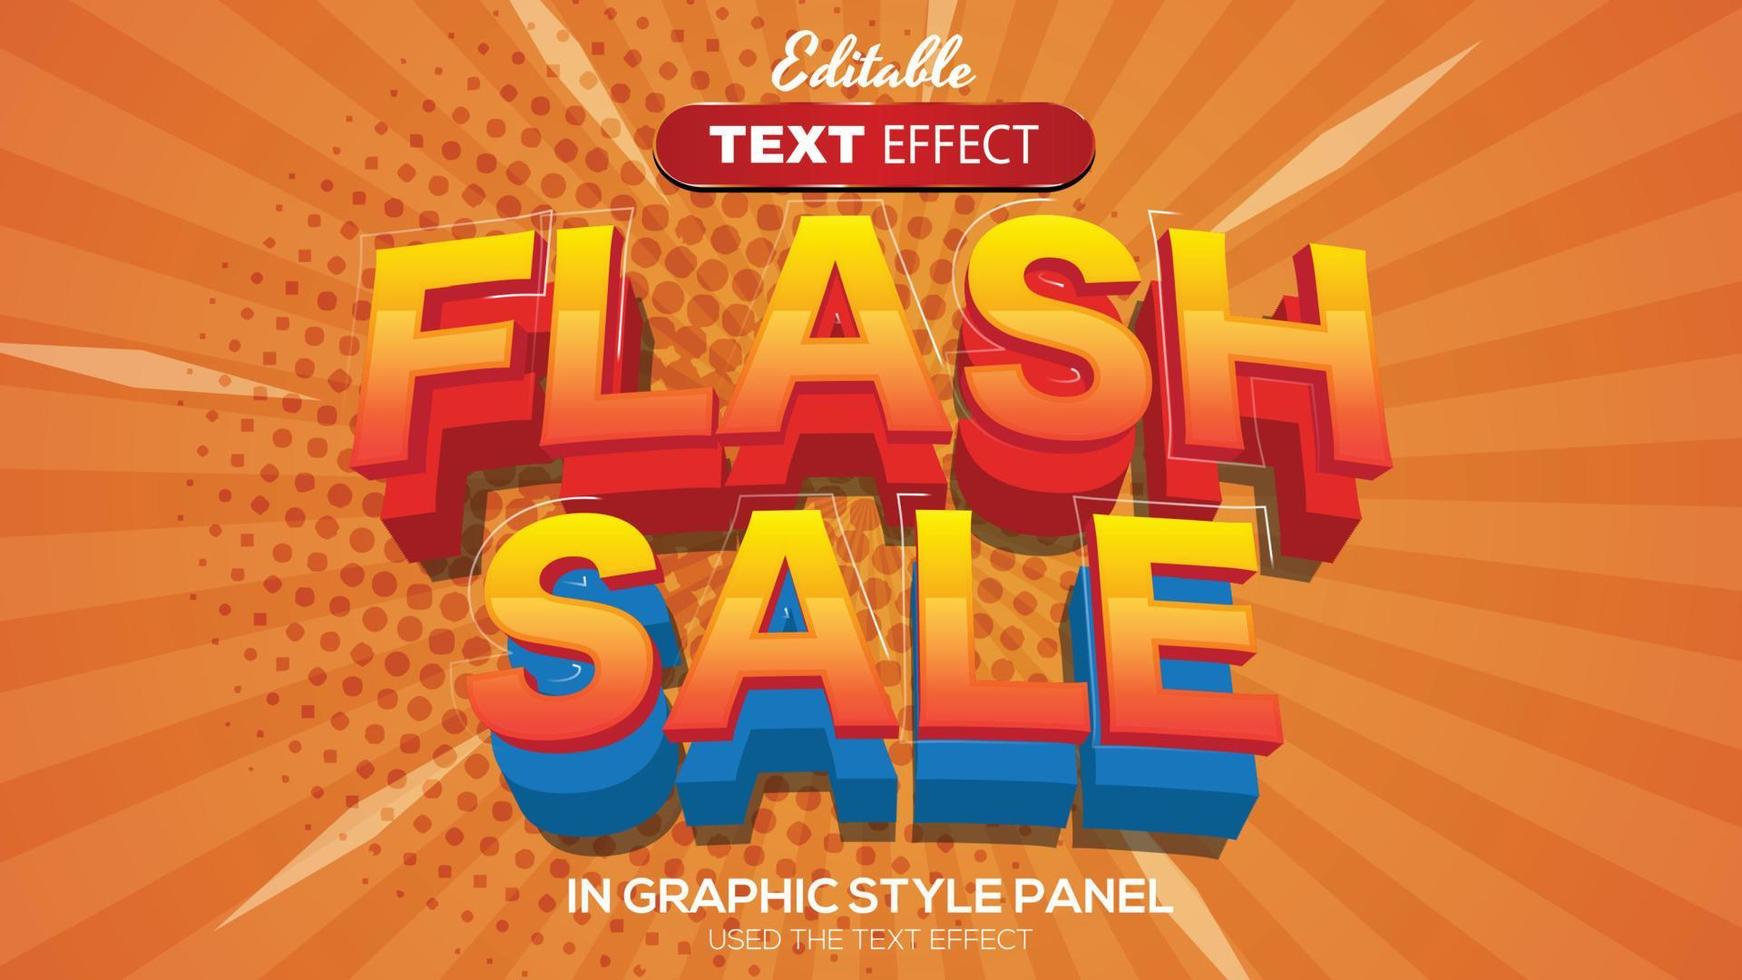 3D editable text effect flash sale theme vector